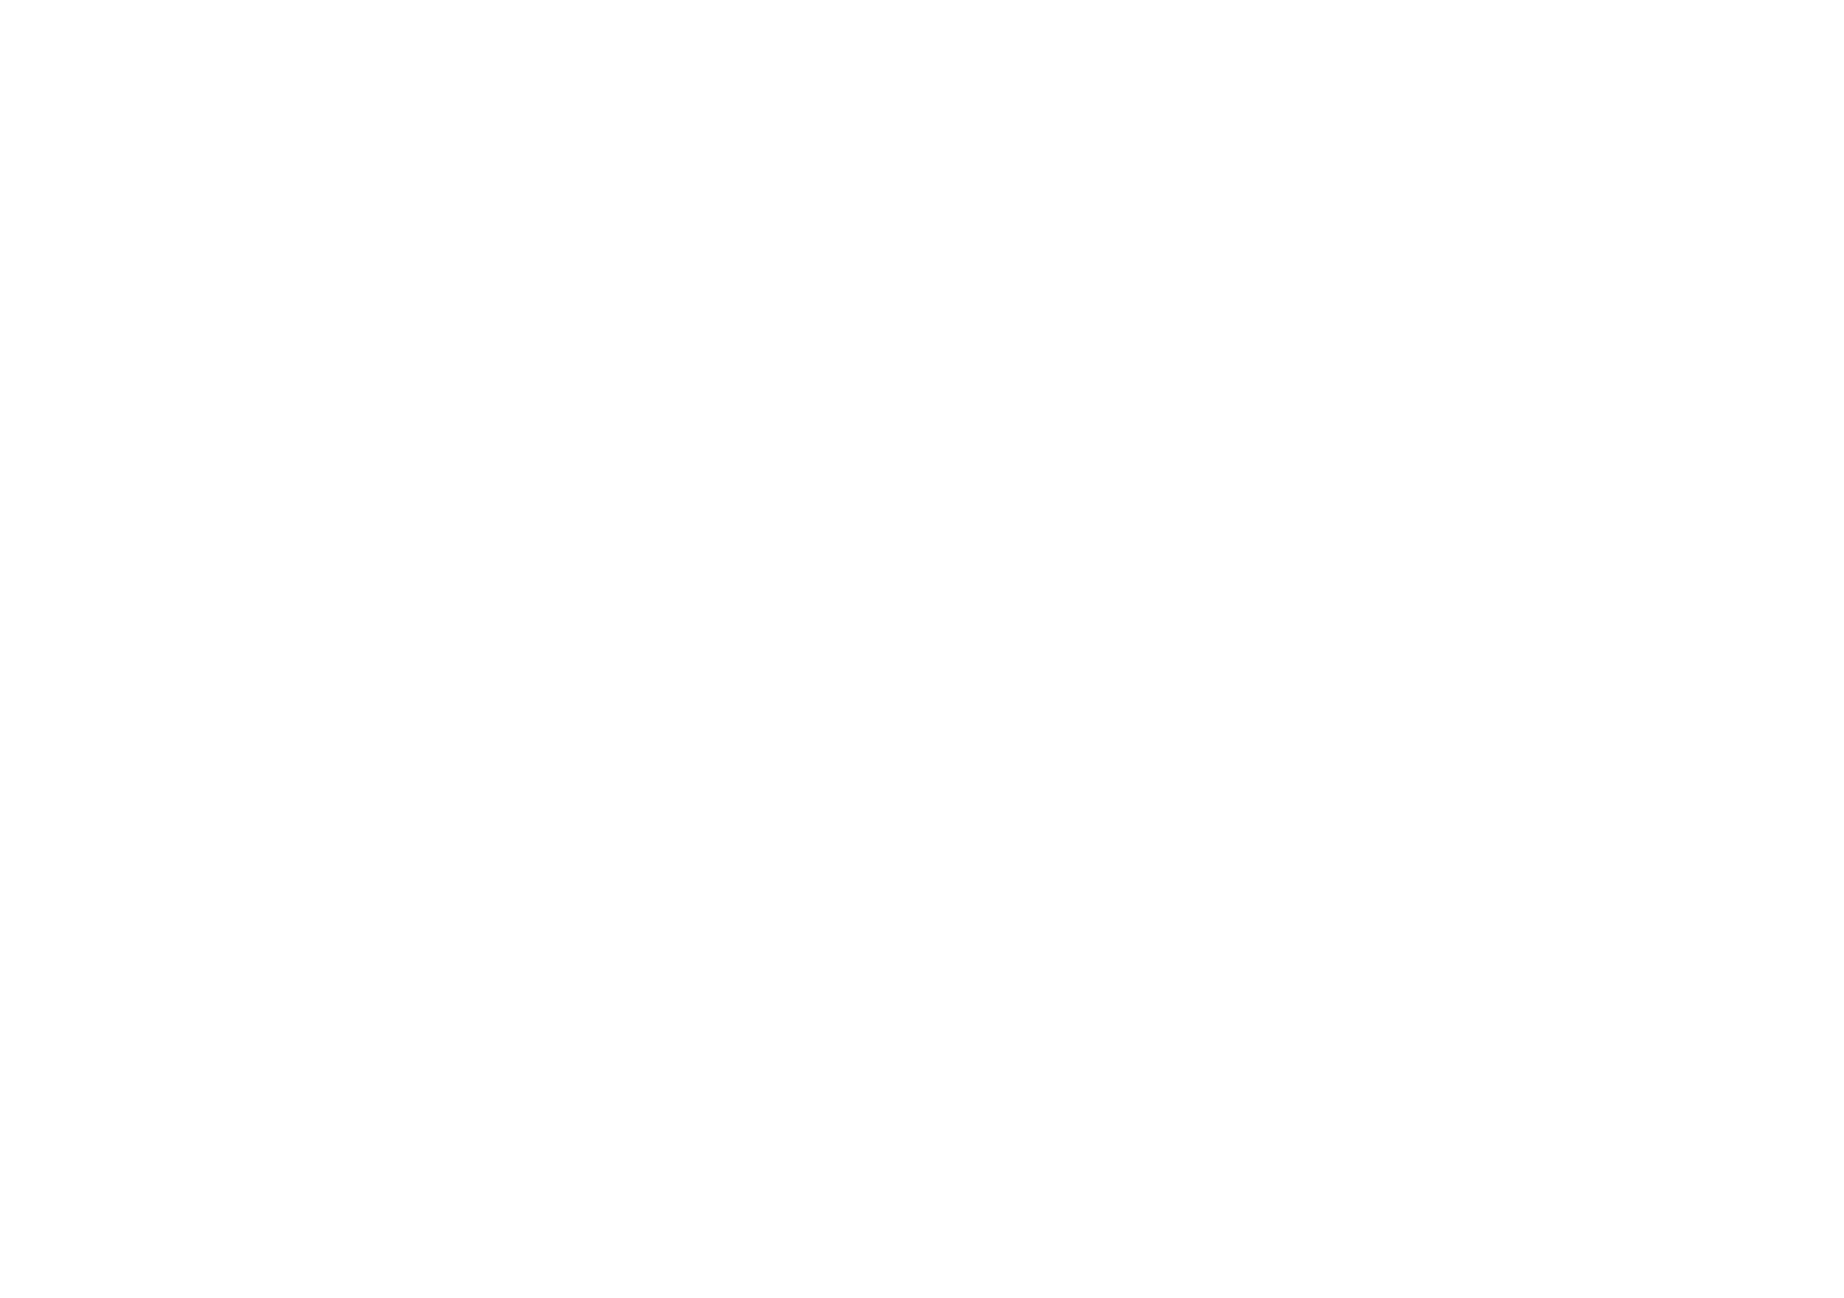 Swamp Thing logo